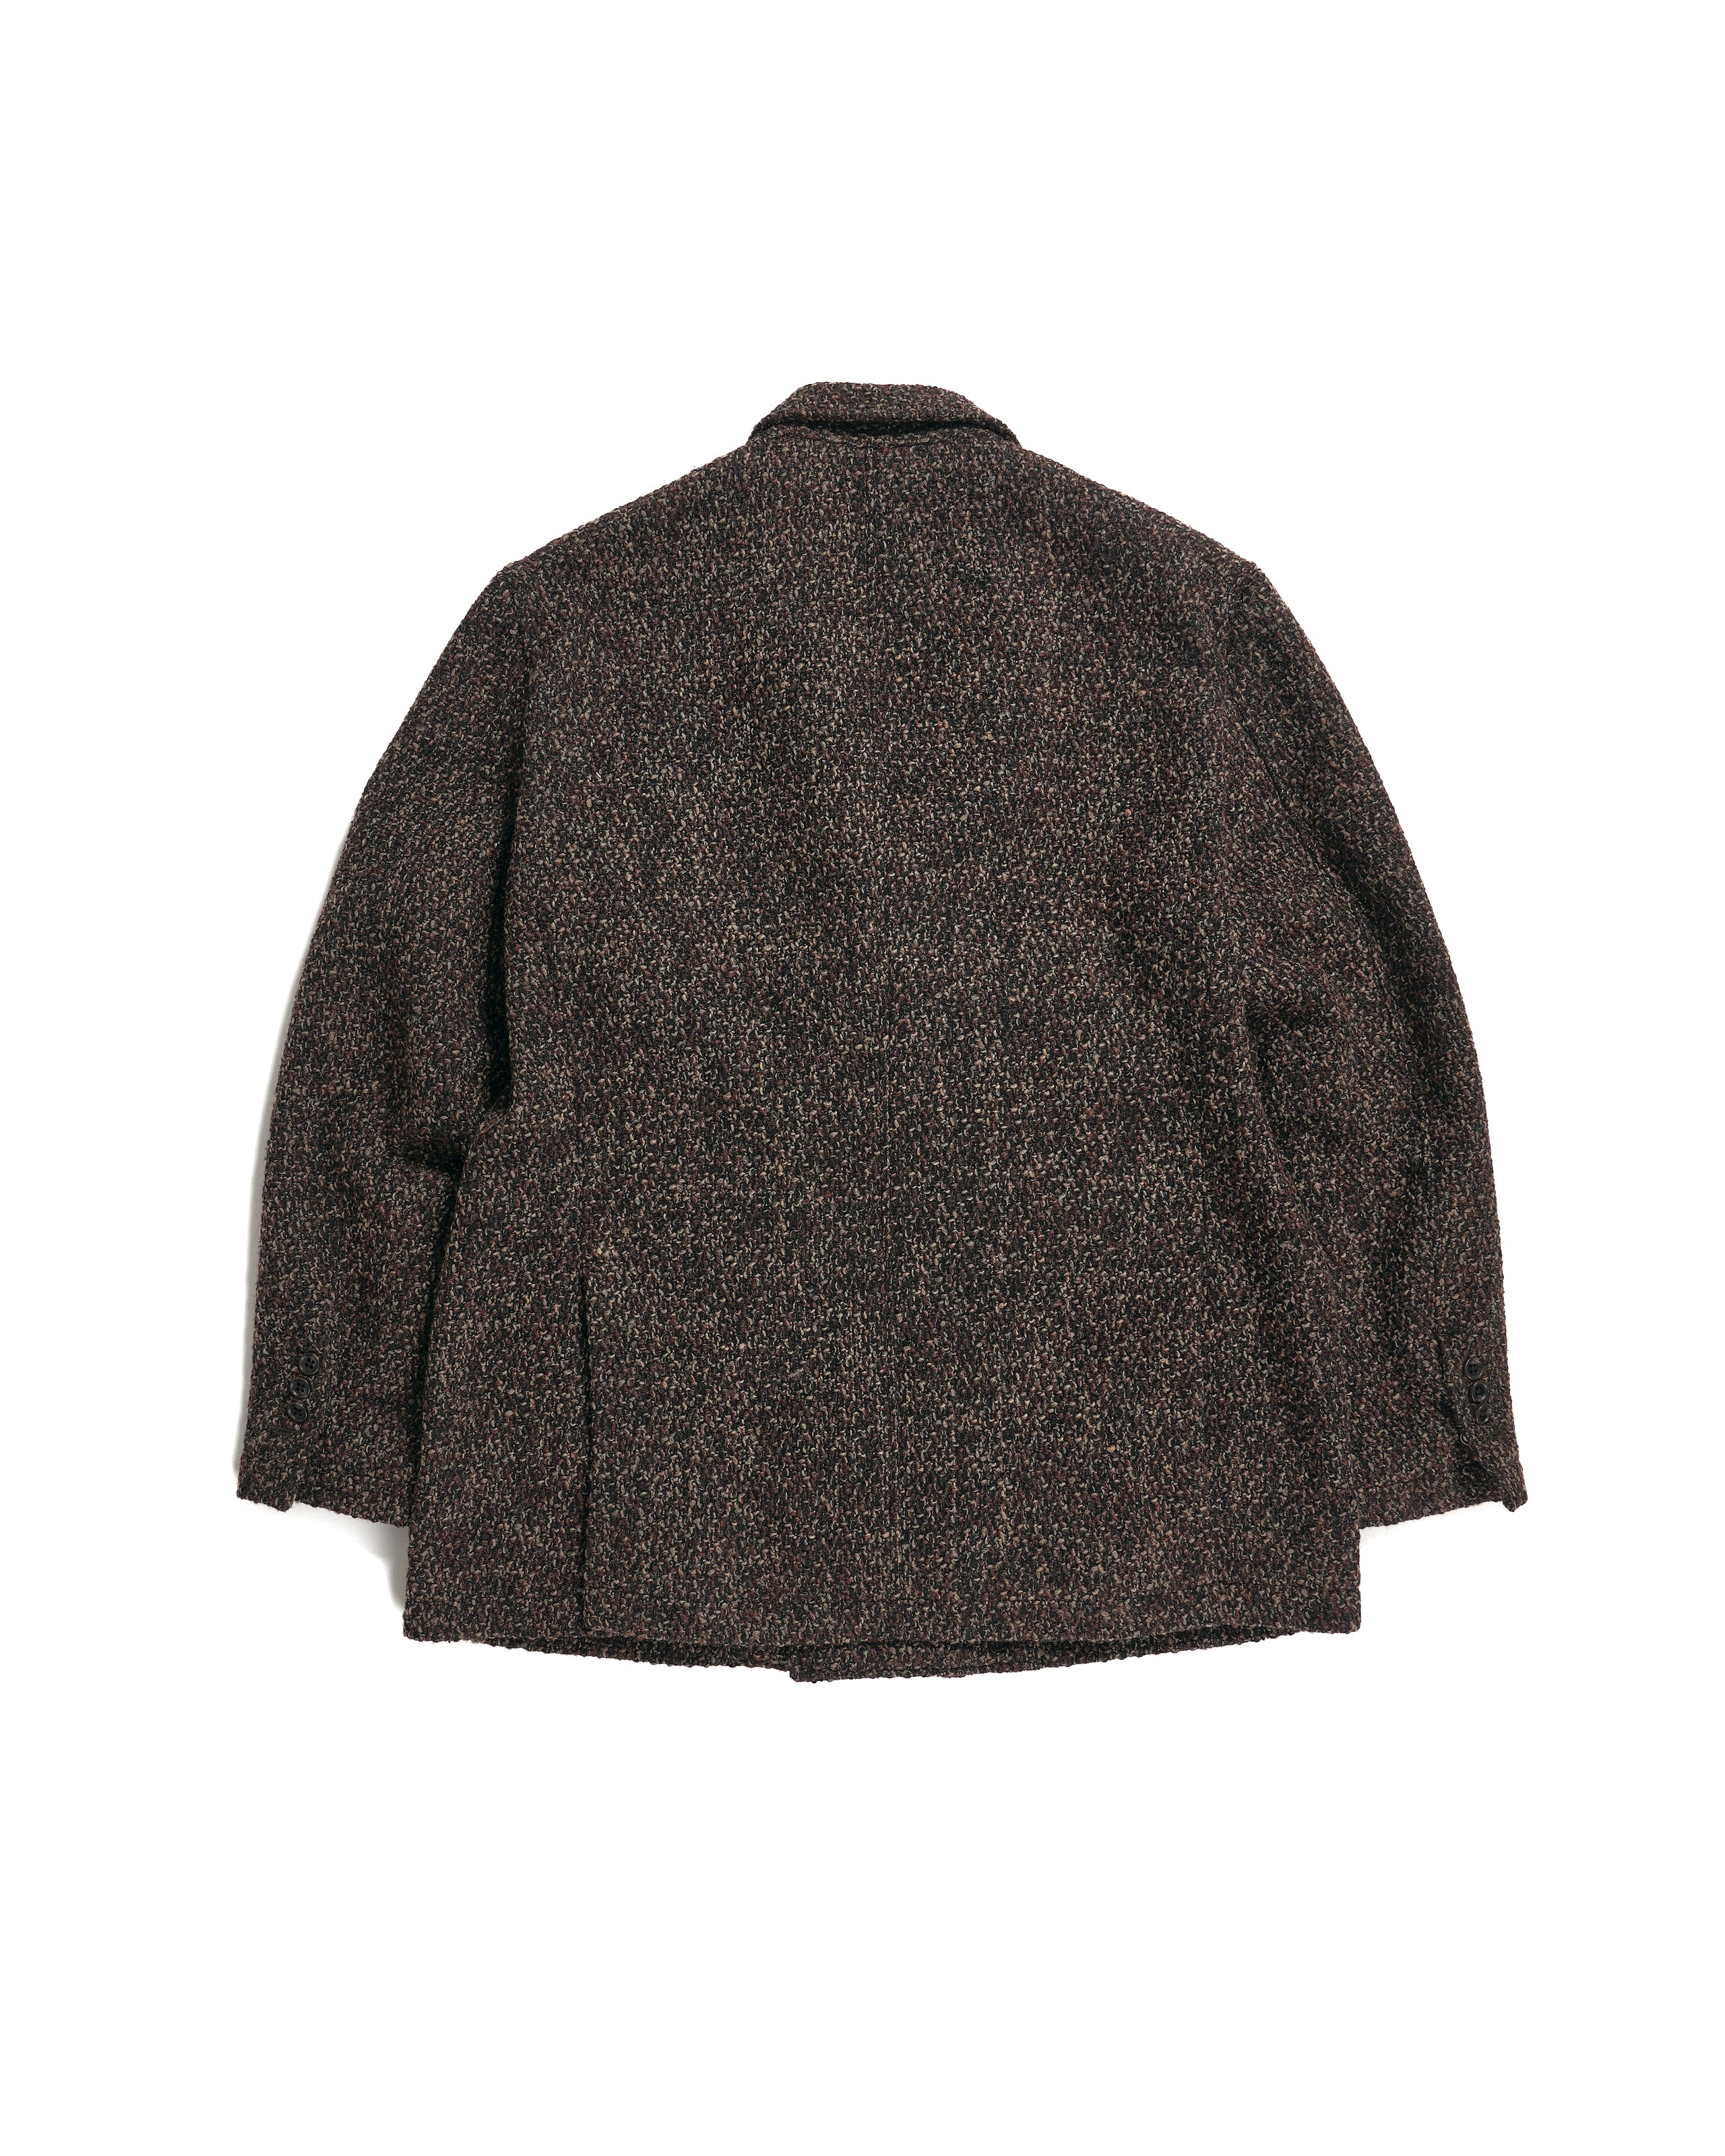 DB Jacket - Dk. Brown Polyester Wool Tweed Boucle